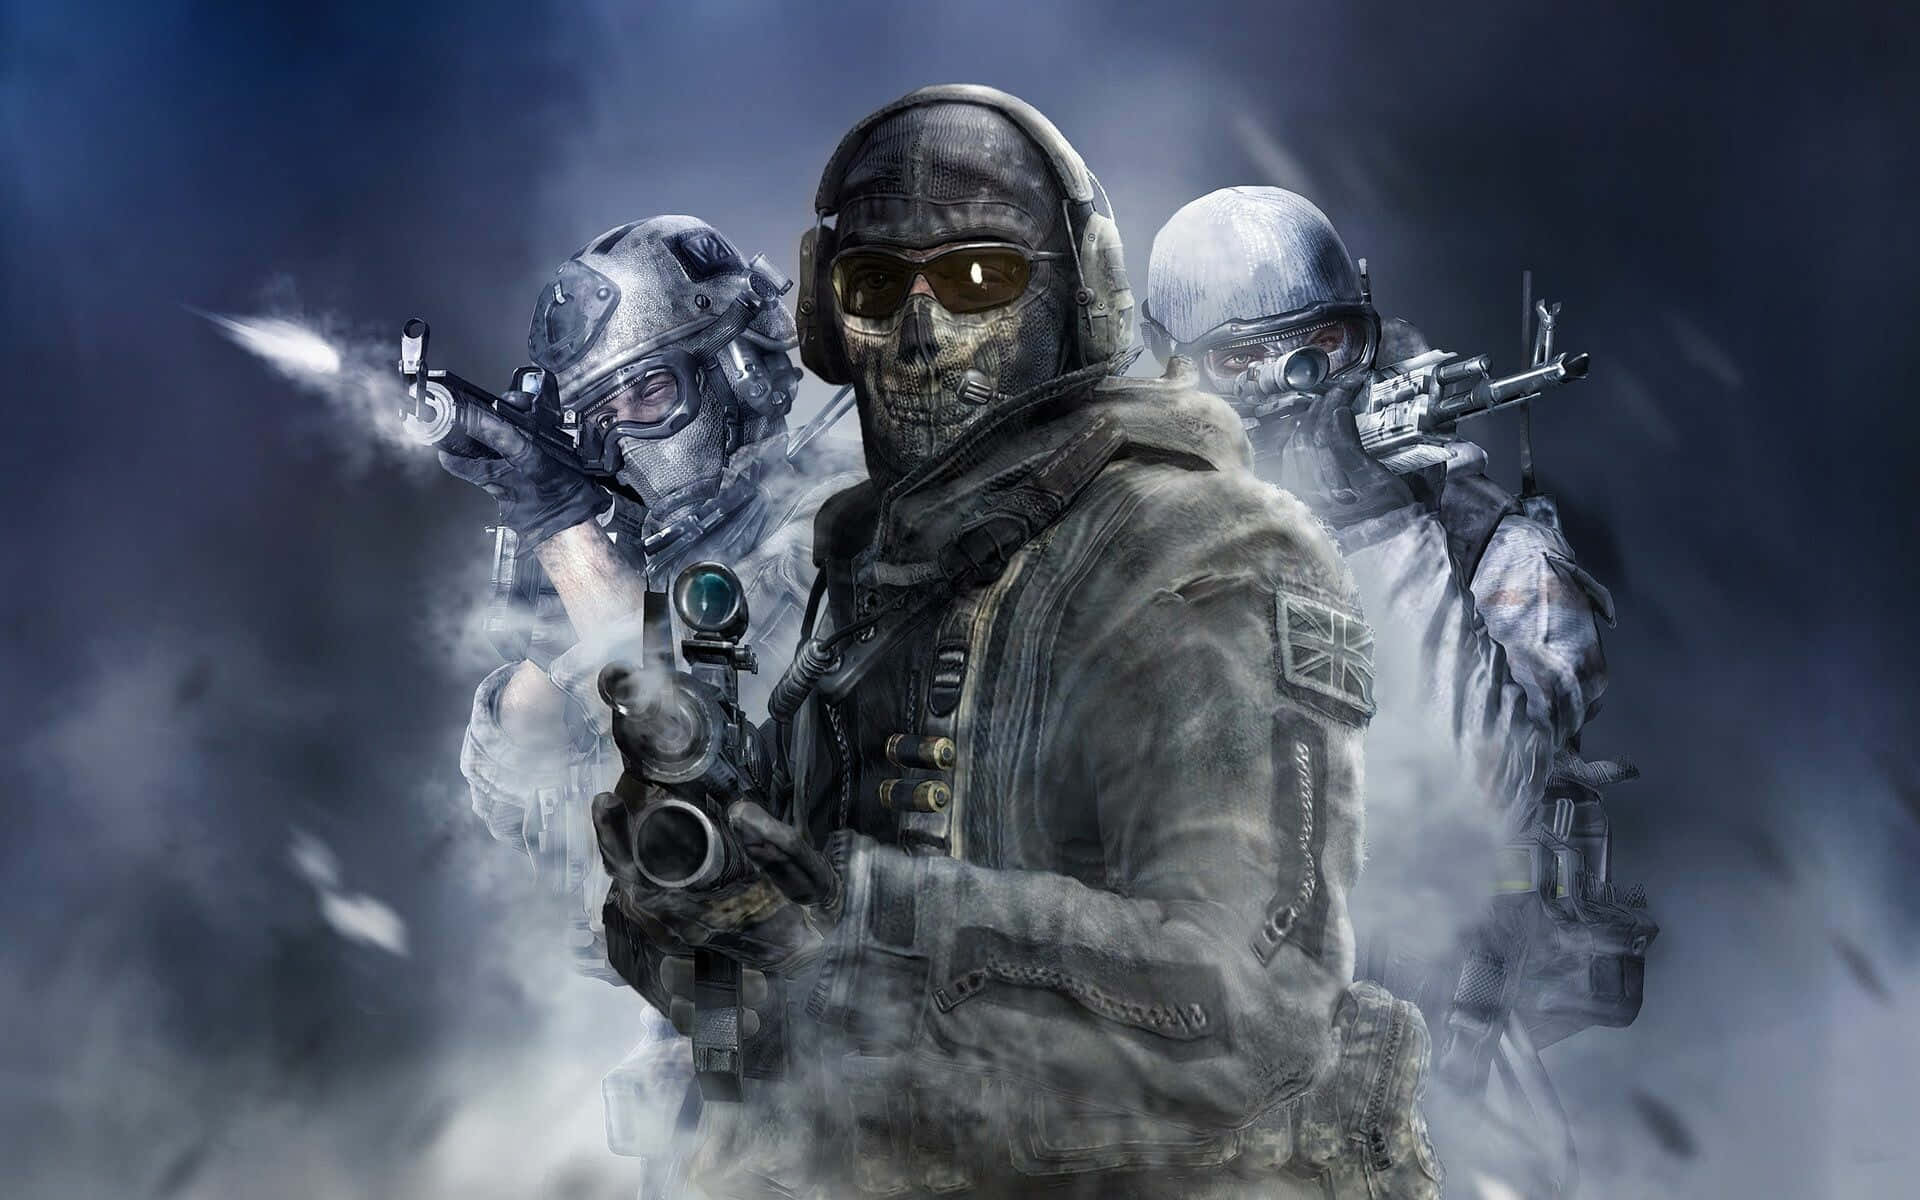 Kämpfedich Zum Sieg Durch Mit Call Of Duty In Full Hd. Wallpaper